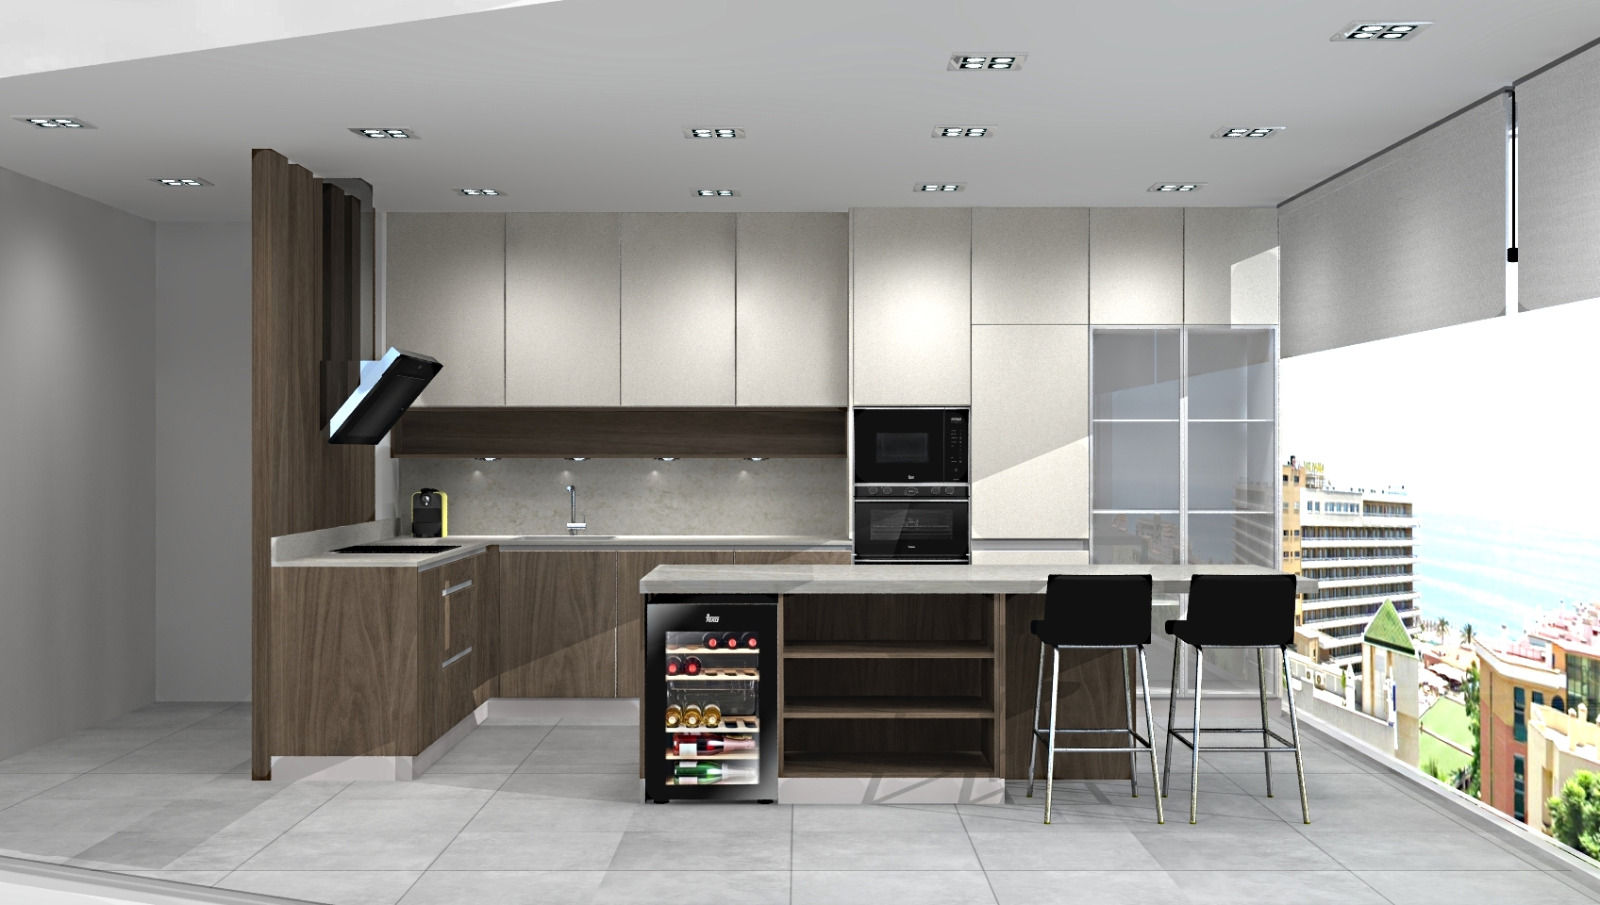 Projeto 3D para showroom de cozinhas, 7eva design - Arquitectura e Interiores 7eva design - Arquitectura e Interiores ห้องครัว